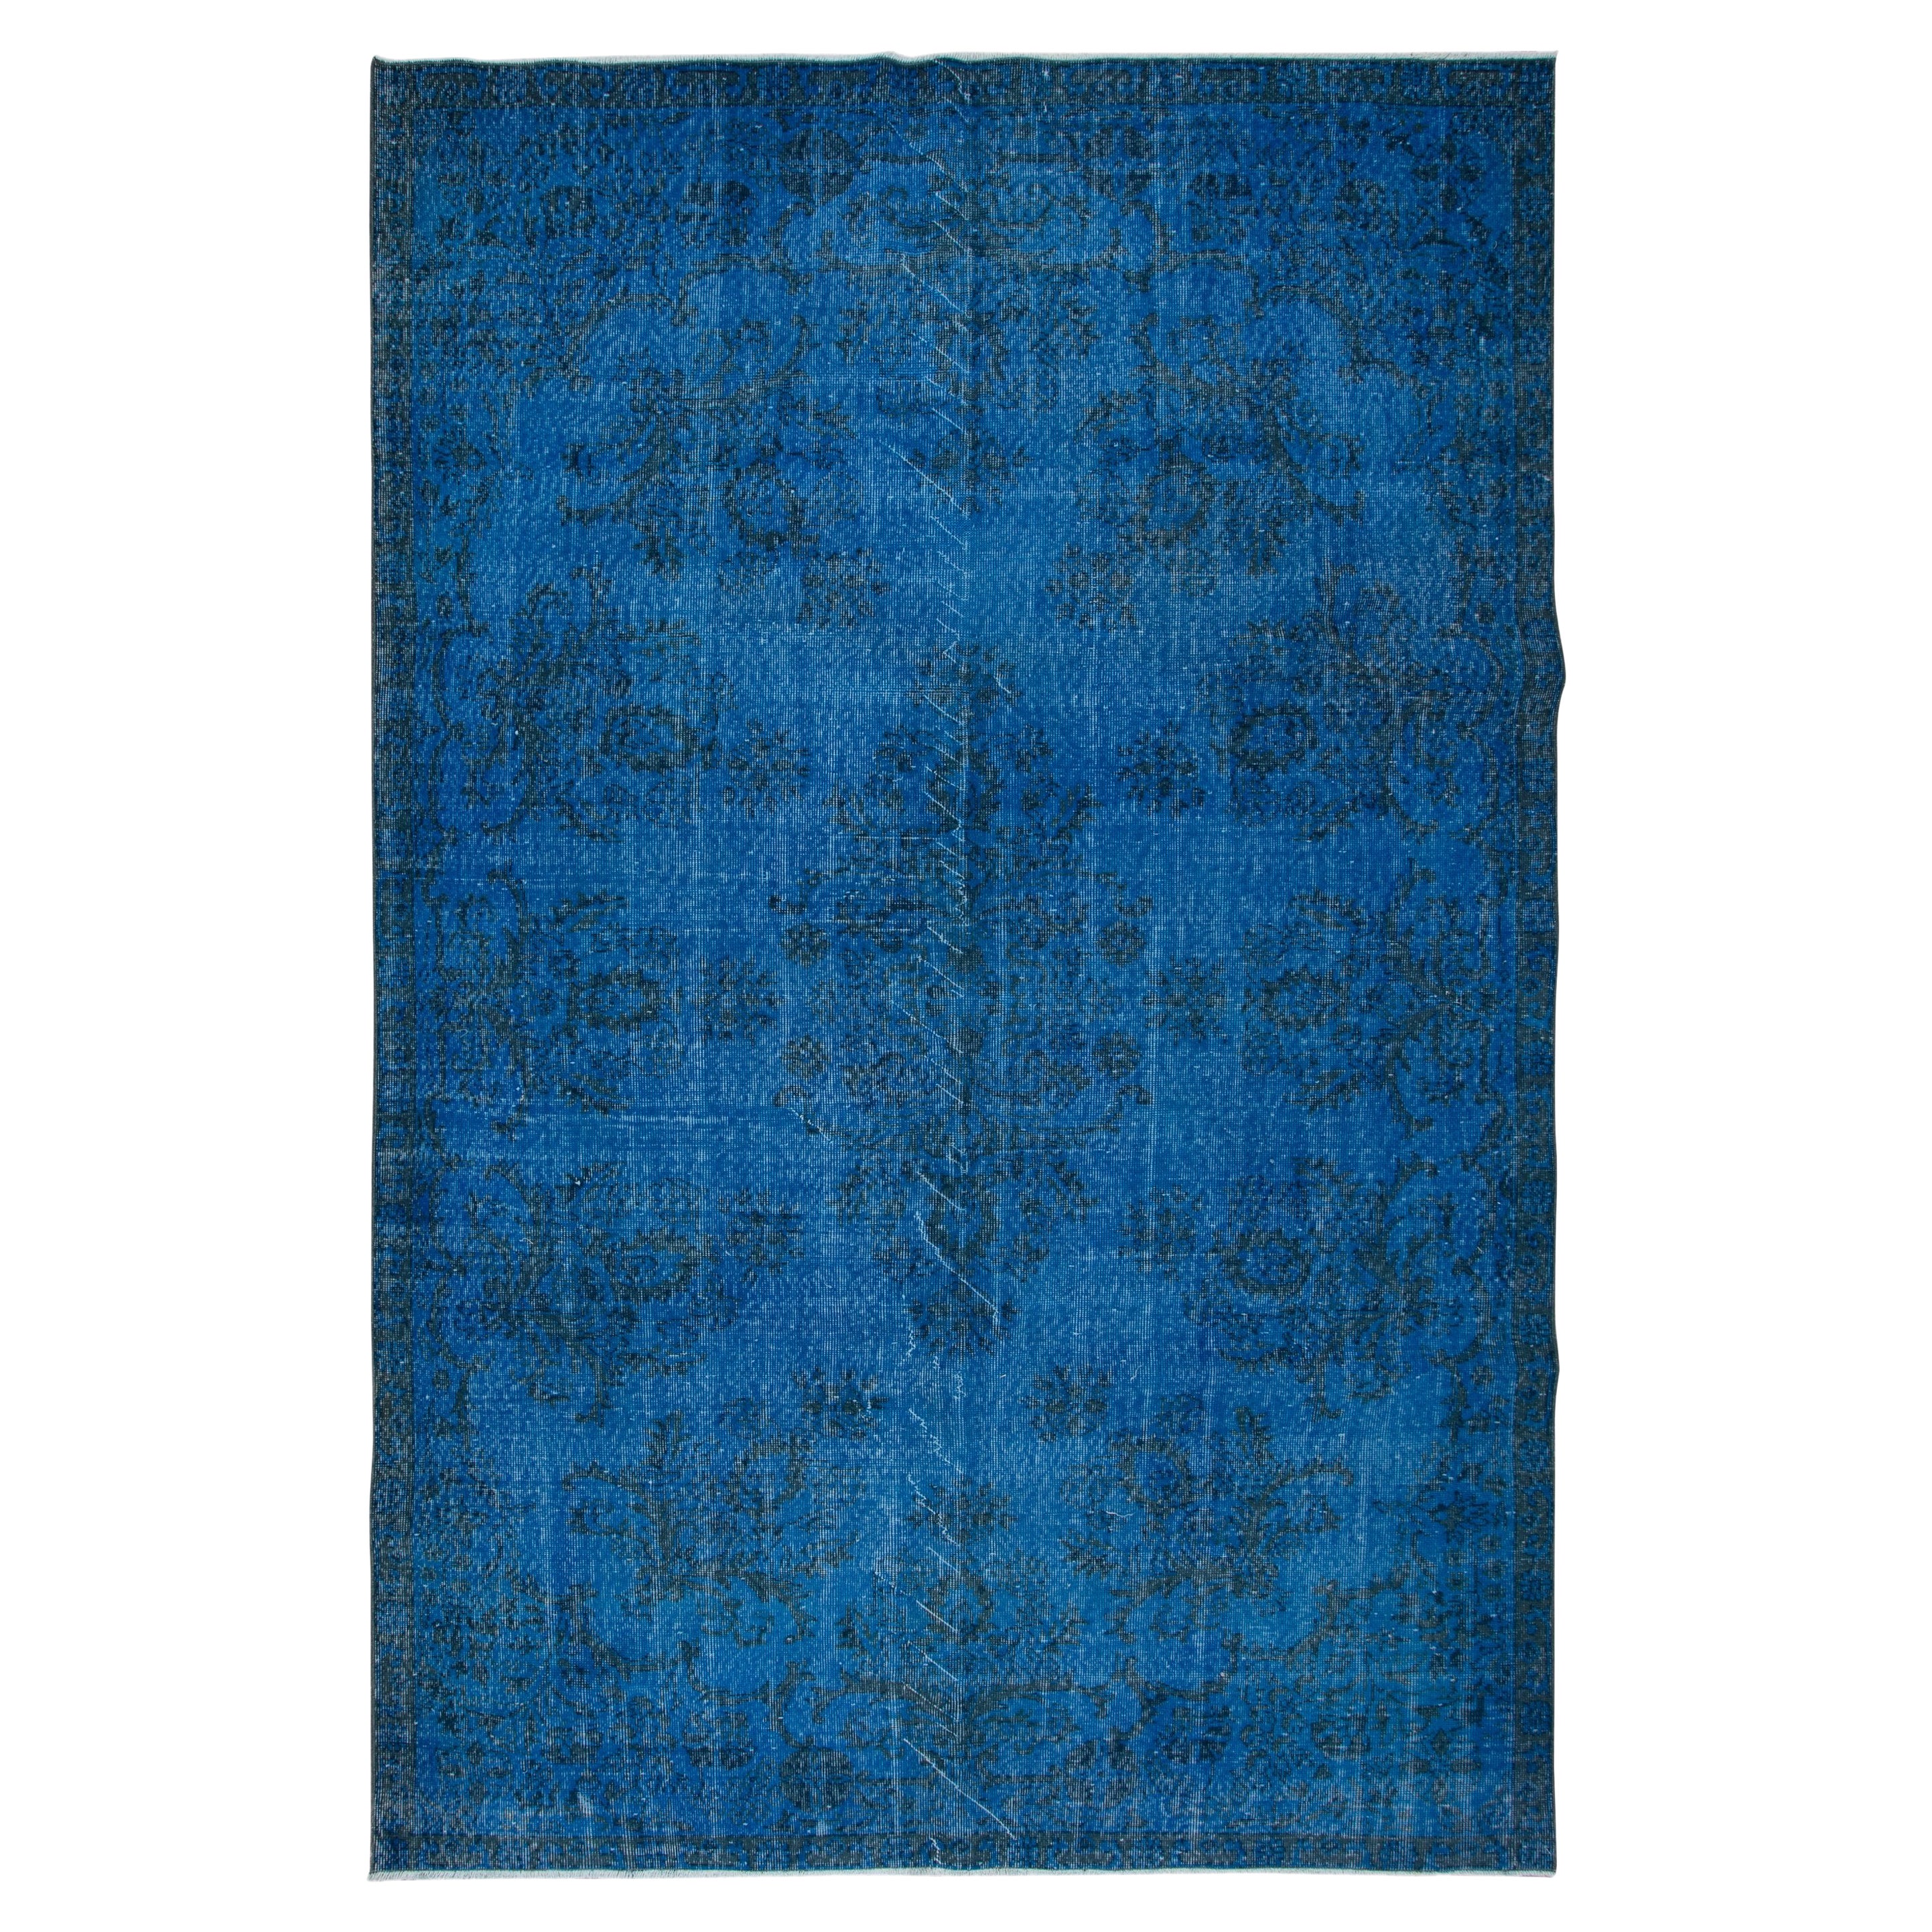 6.7x10.5 Ft Blue Modern Area Rug, Overdyed Carpet, Handmade Living Room Carpet For Sale